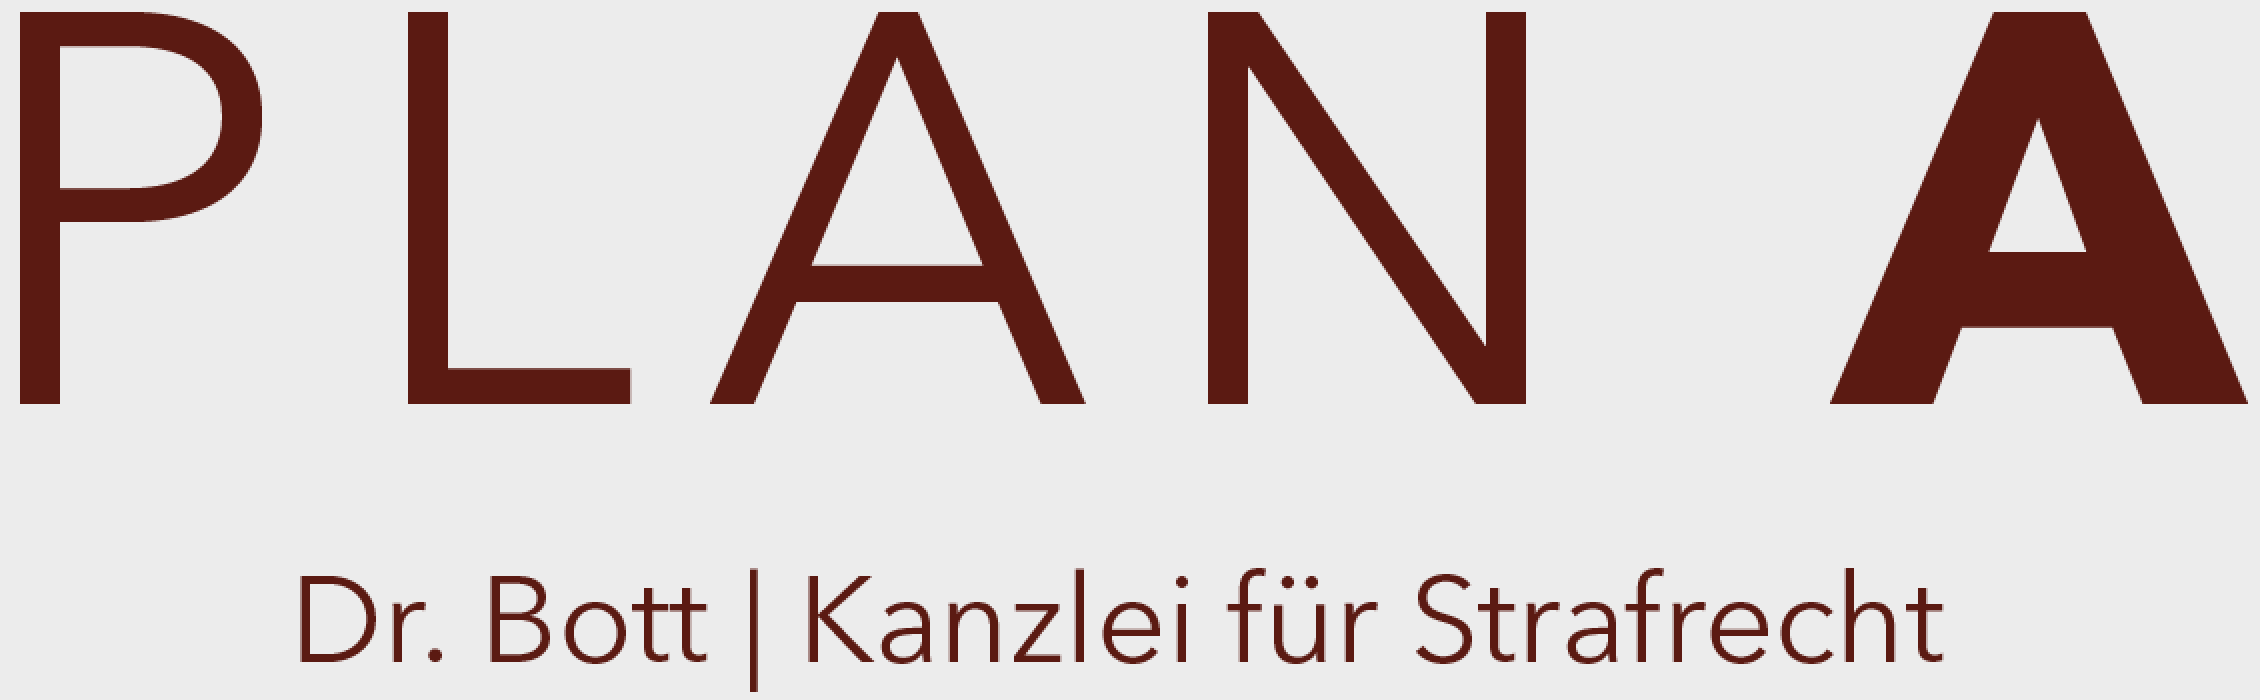 (c) Kanzlei-plan-a.de